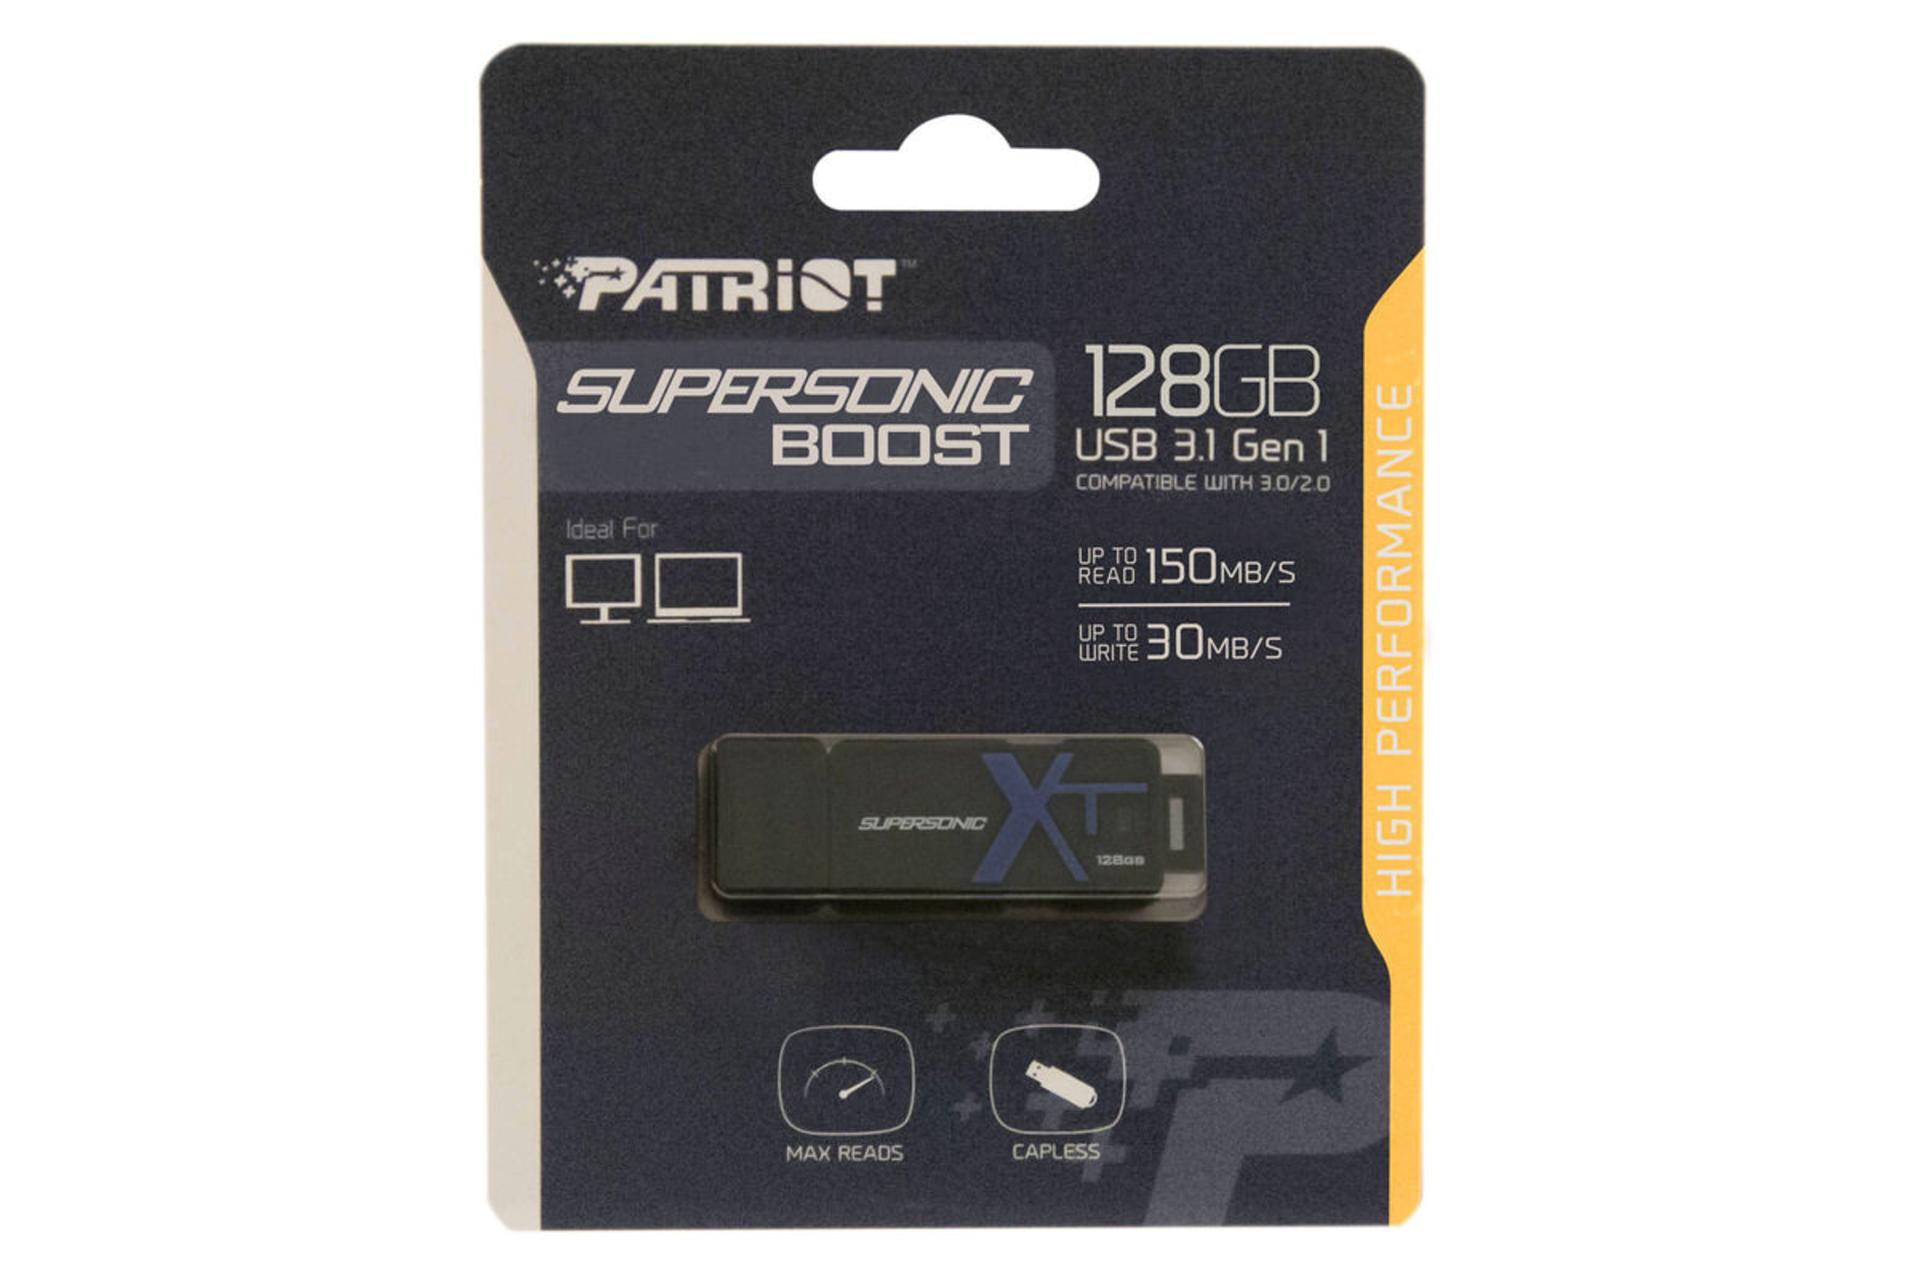 جعبه پاتریوت مدل Supersonic Boost XT USB3.1 Gen1 ظرفیت 128 گیگابایت